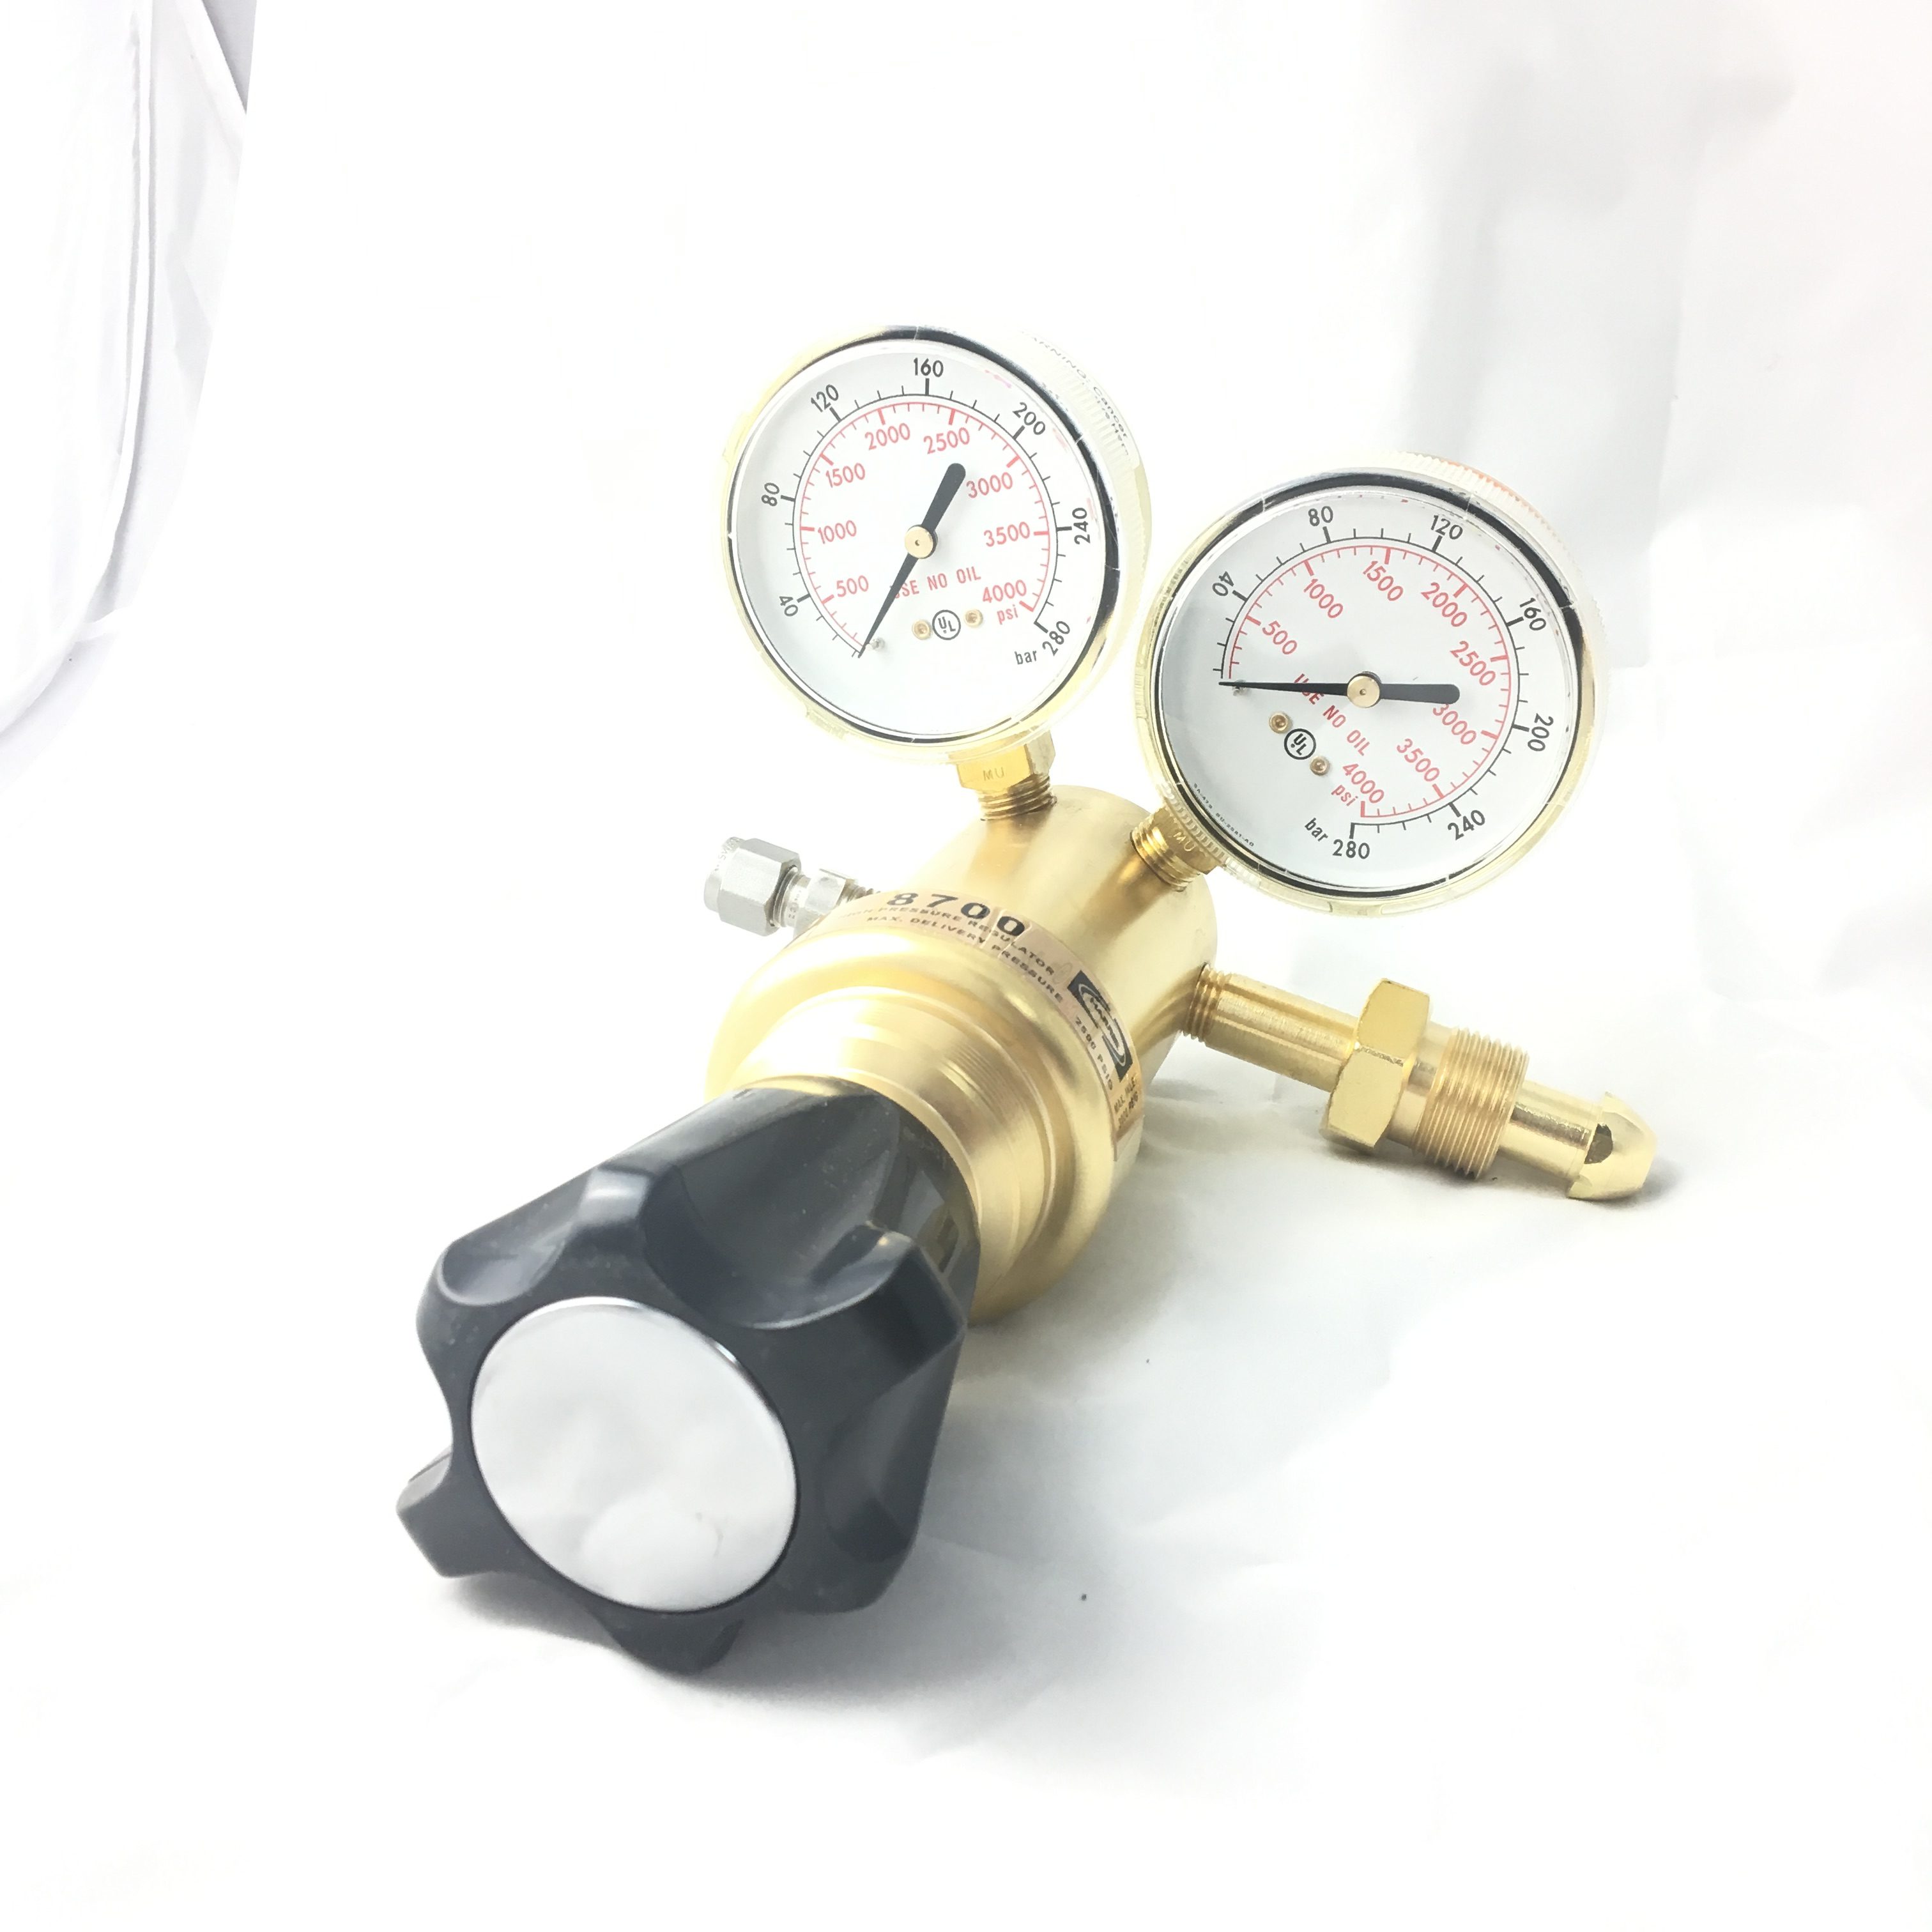 for Industrial Use Nitrogen Pressure Gauge Pressure Gauges Nitrogen Regulator Industrial Nitrogen Pressure Gauge Nitrogen Pressure Regulator Gauge 